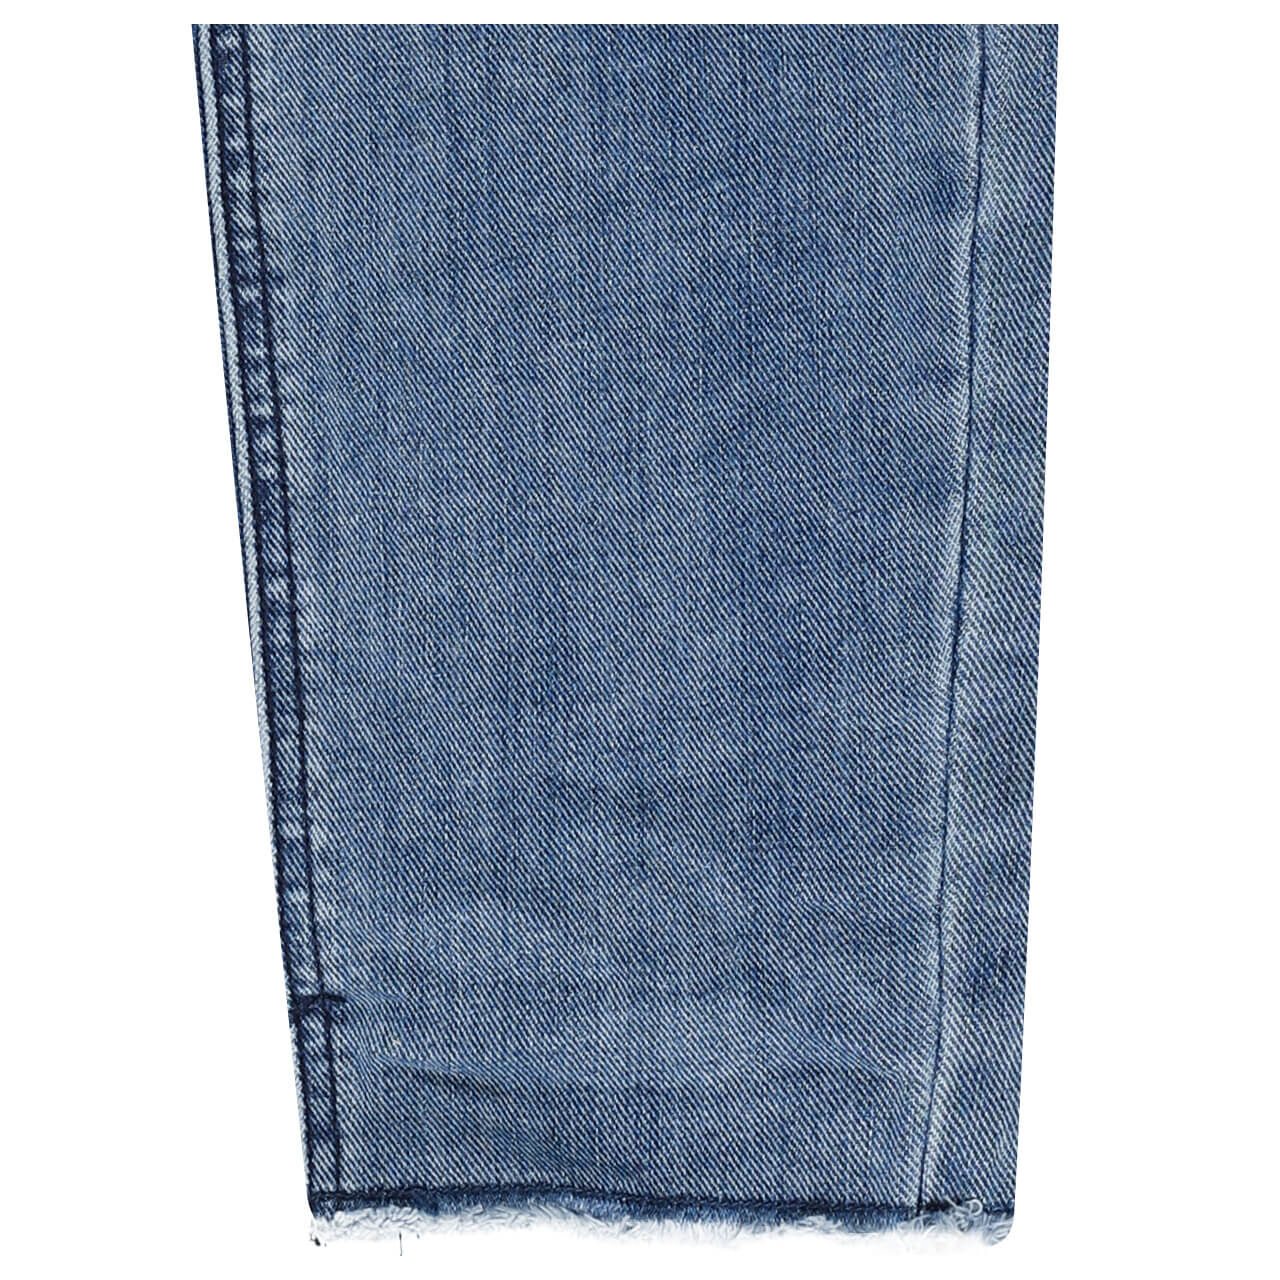 Buena Vista Jeans Malibu 7/8 Stretch Denim tint blue